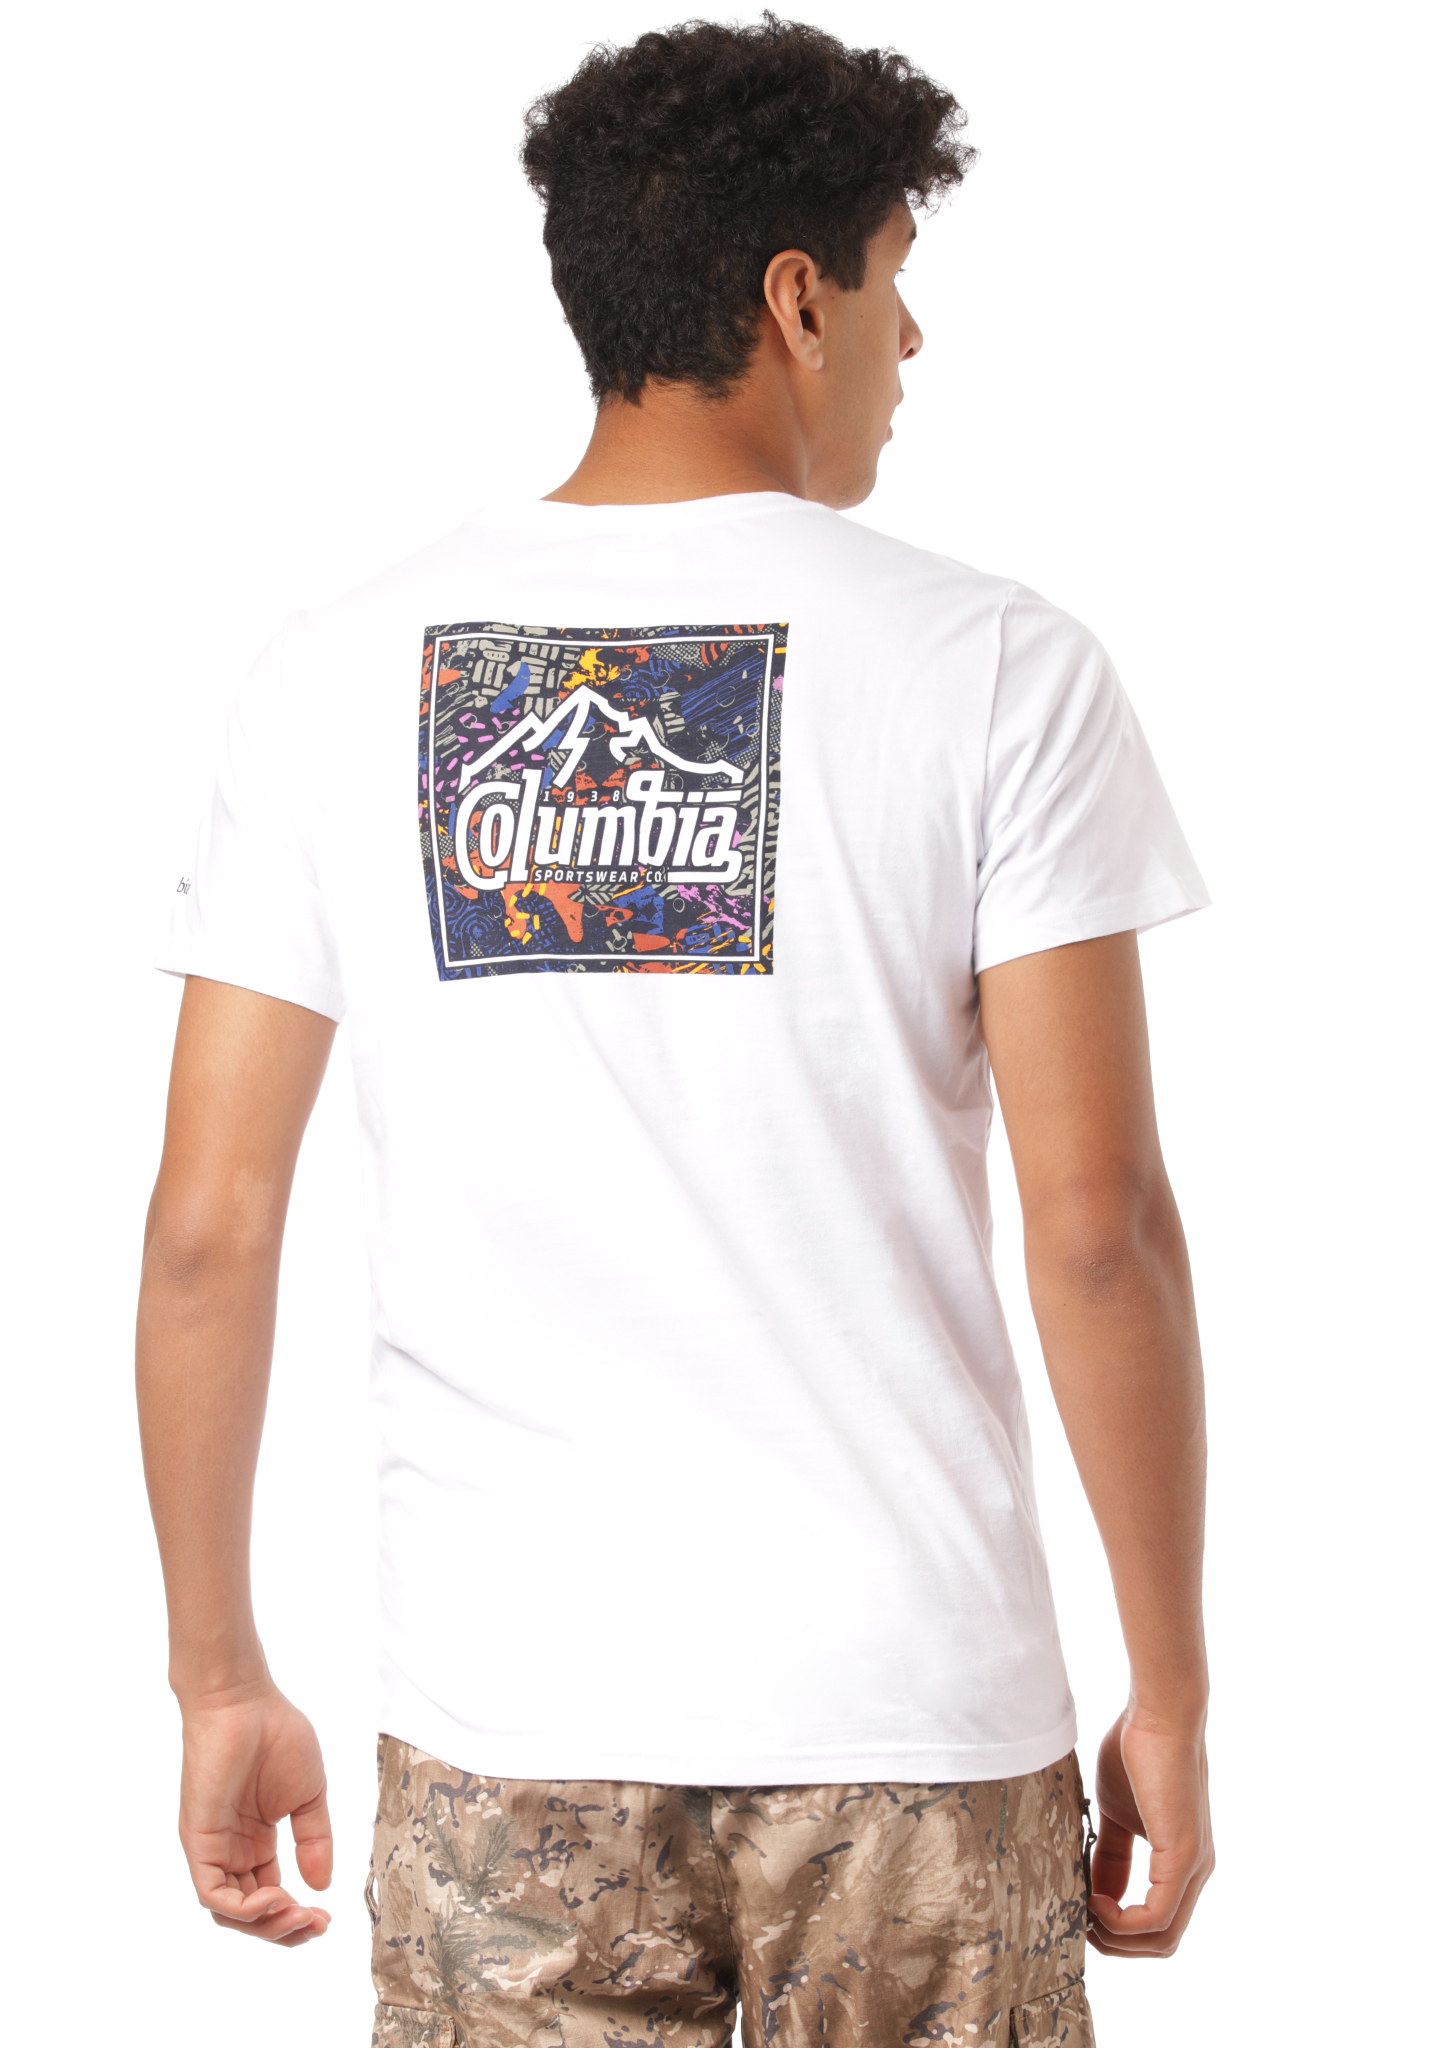 Columbia Rapid Ridge T-Shirt weißer gipfelstürmer S